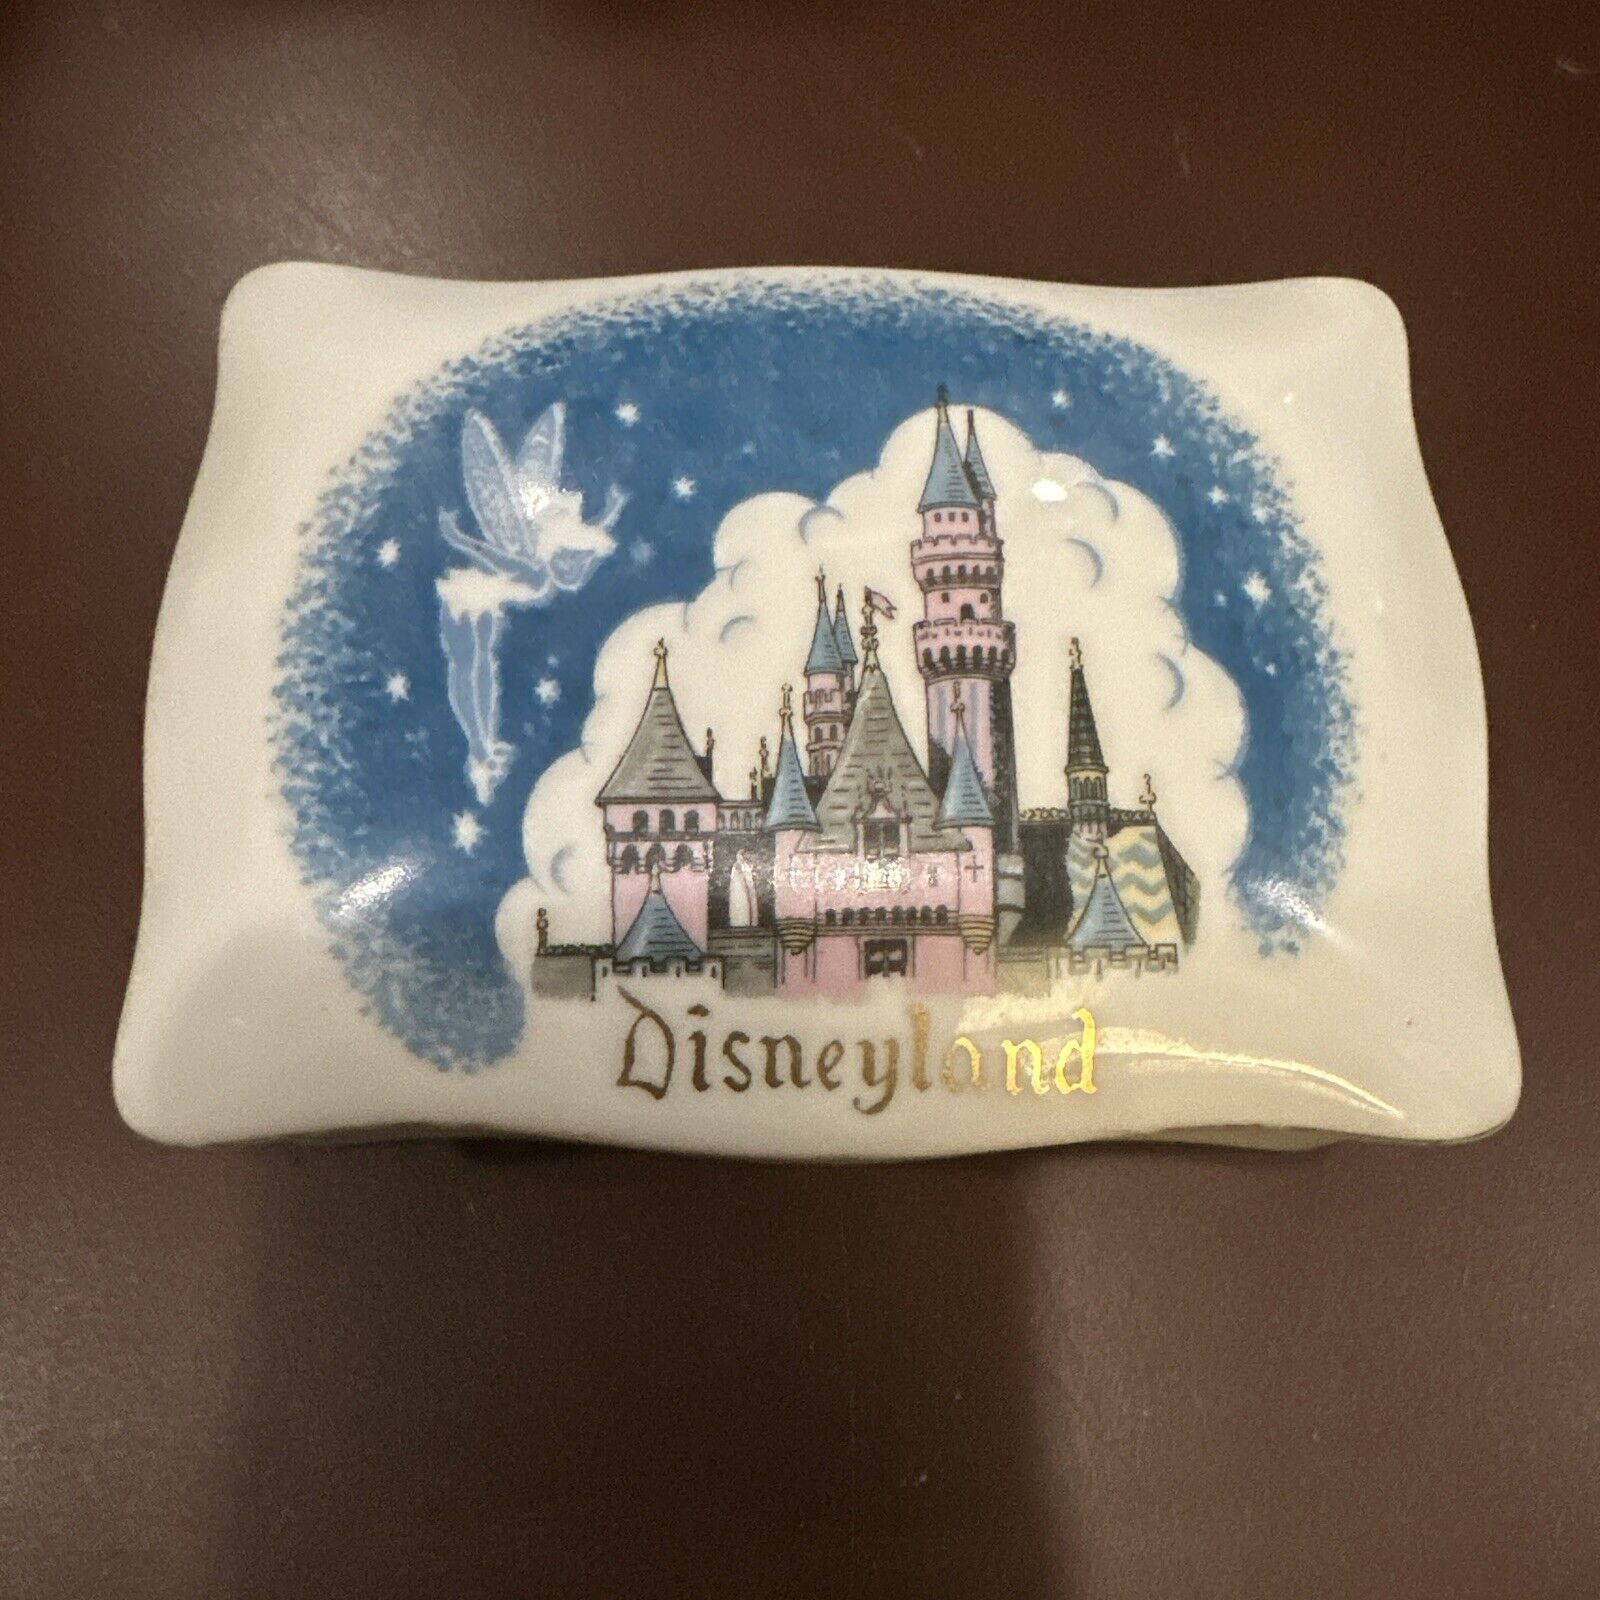 Vintage Porcelain  Disneyland Trinket Box - 4.75” x 3.5” x 2” Tinkerbell Disney